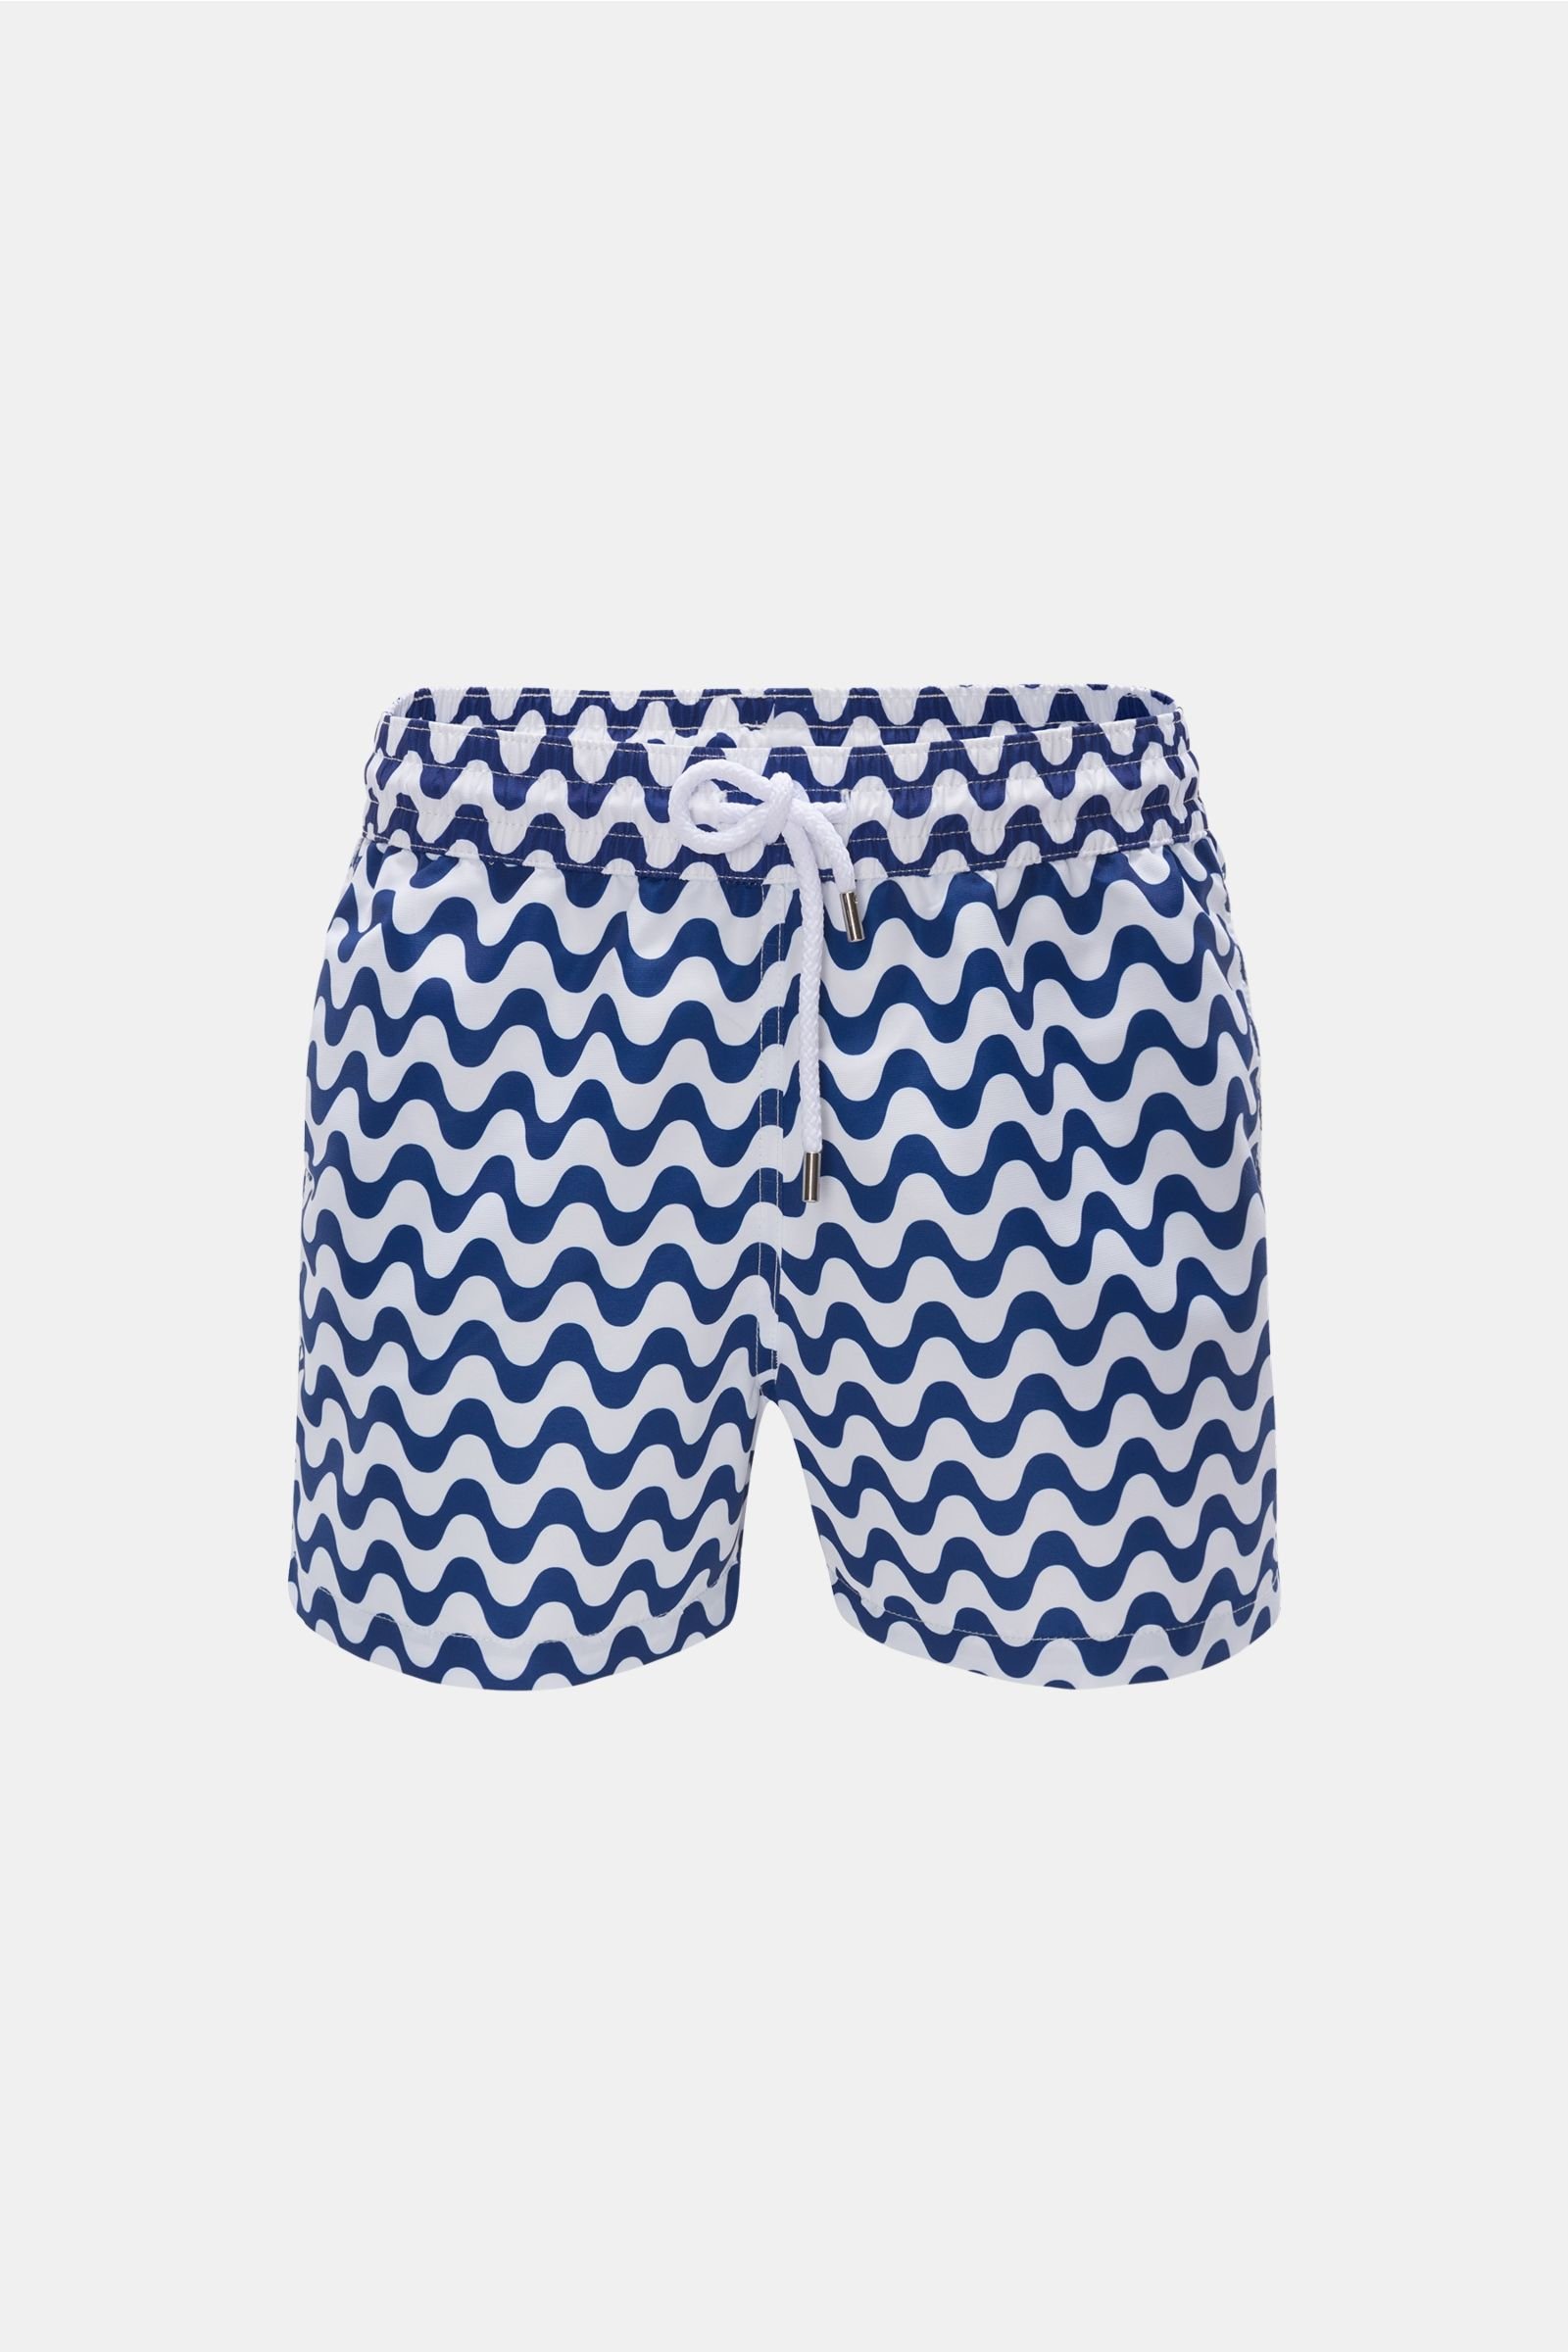 Swim shorts navy/white patterned